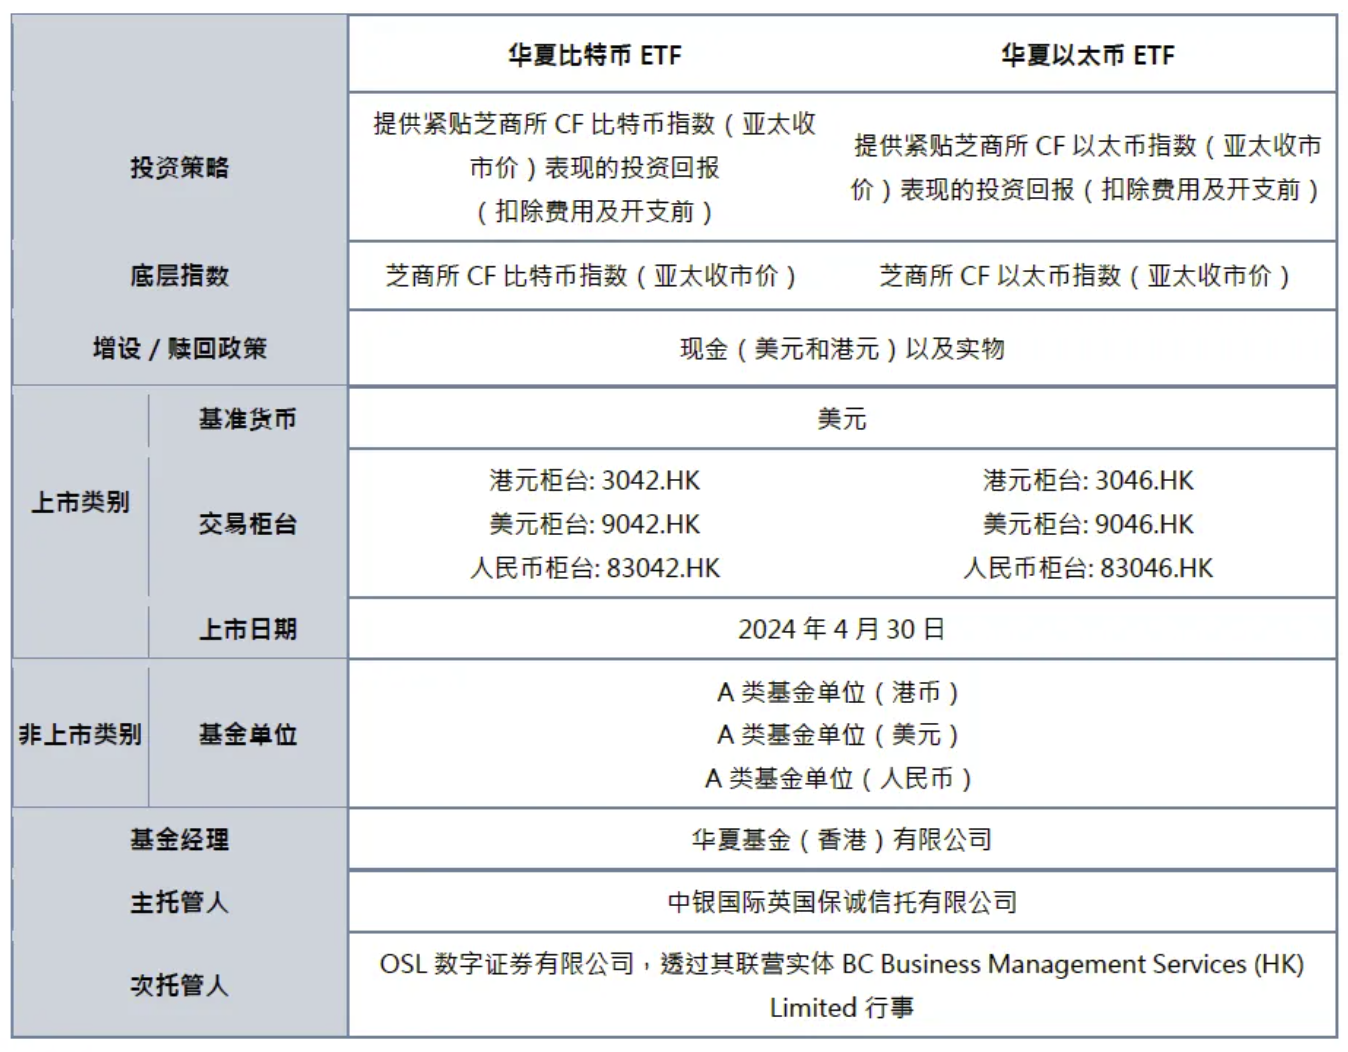 華夏現貨比特幣、以太幣ETF獲香港證監會批准